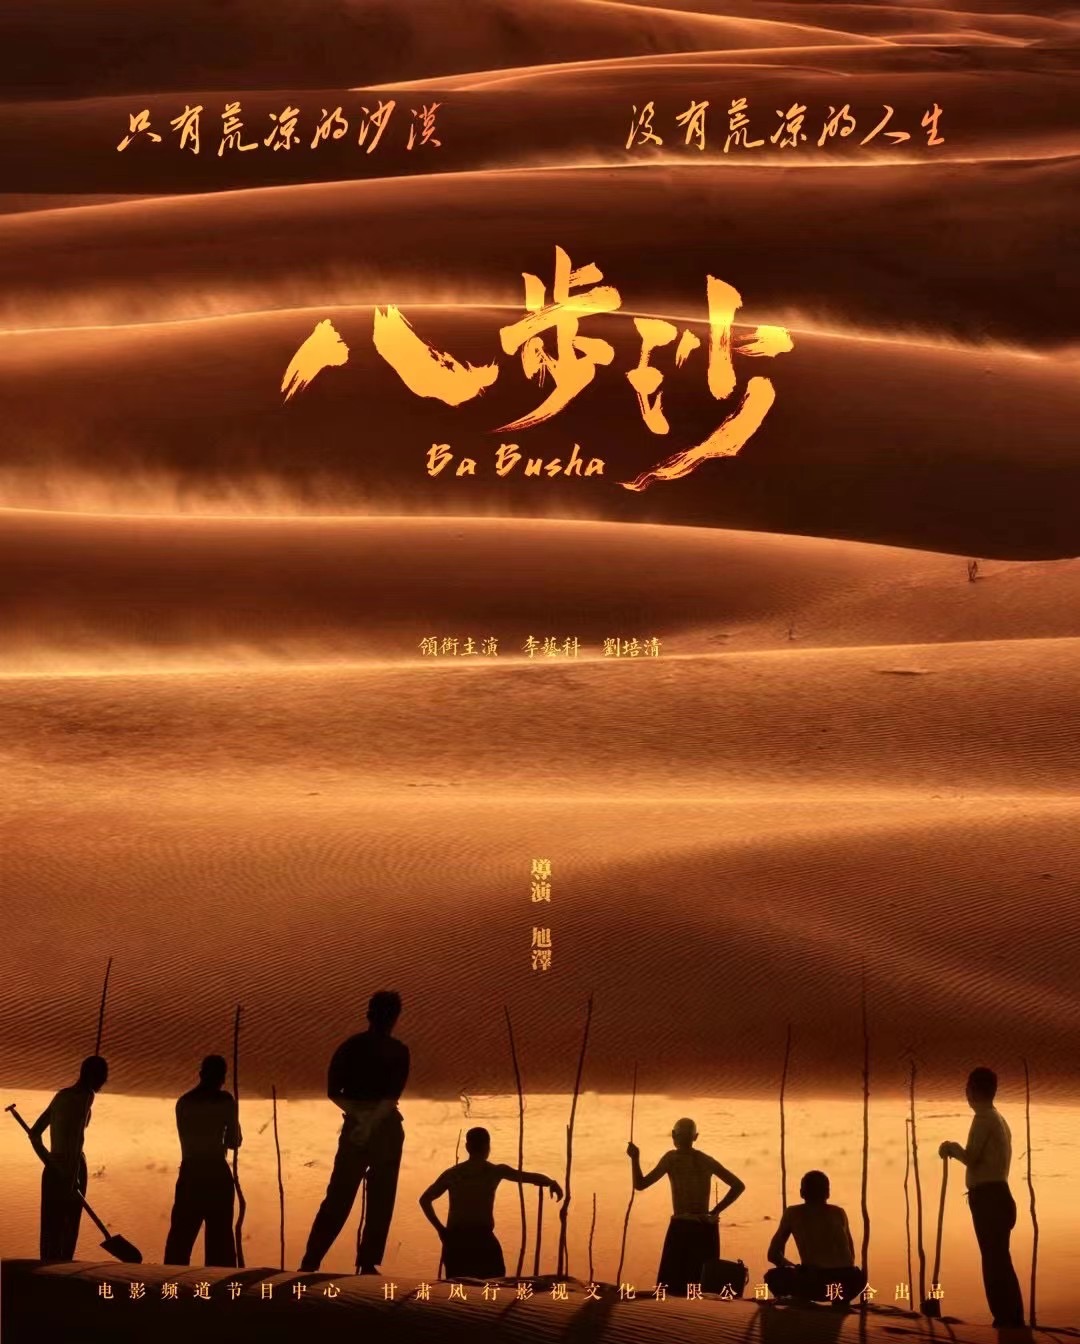 新人演员张珂铭参演电影《八步沙》获第34届中国金鸡奖提名